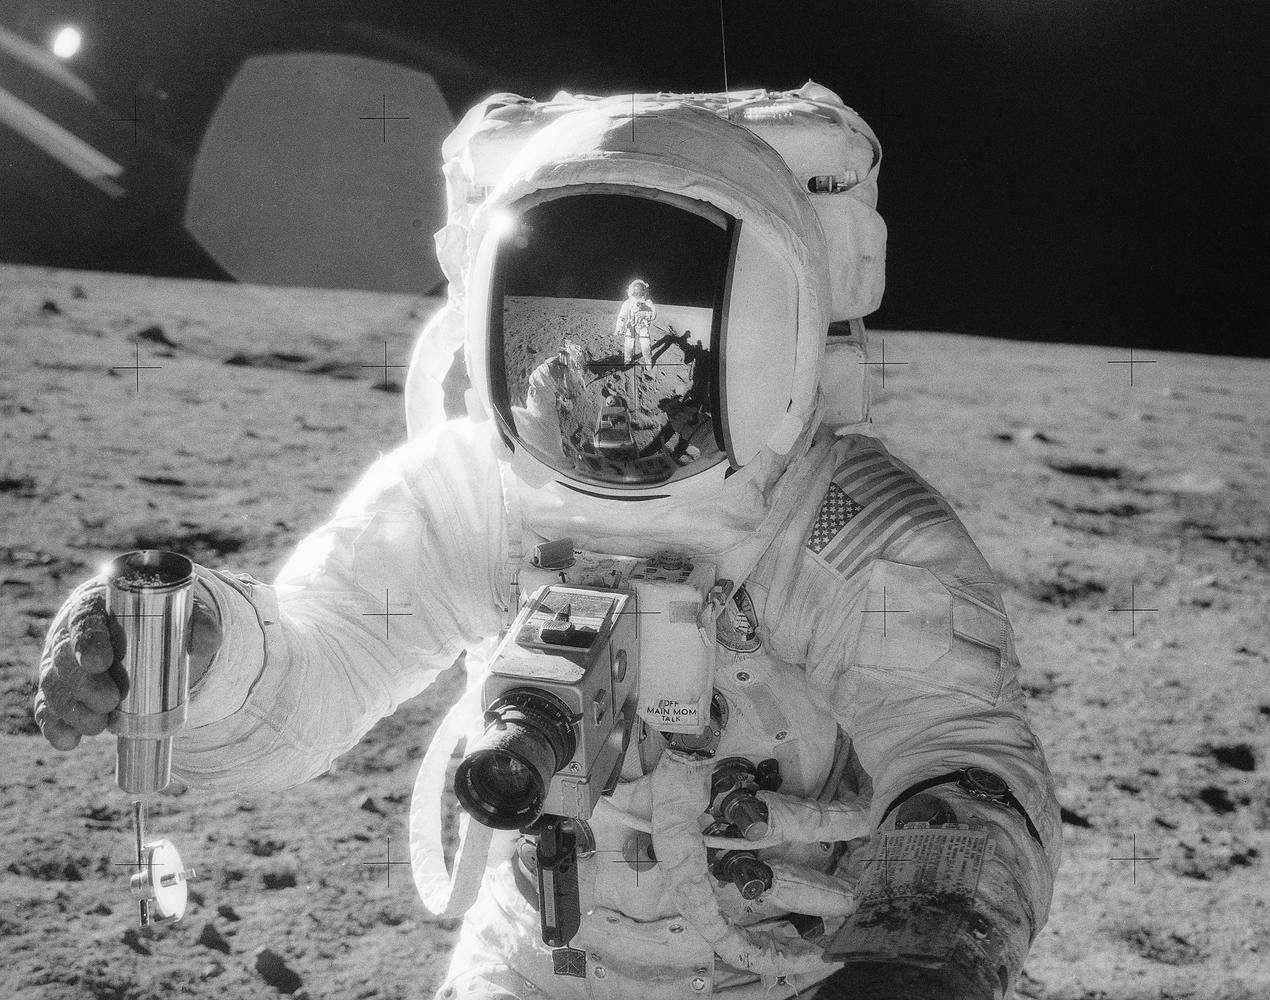 Kadr z misji Apollo 12. Fot. NASA [nasa.gov]